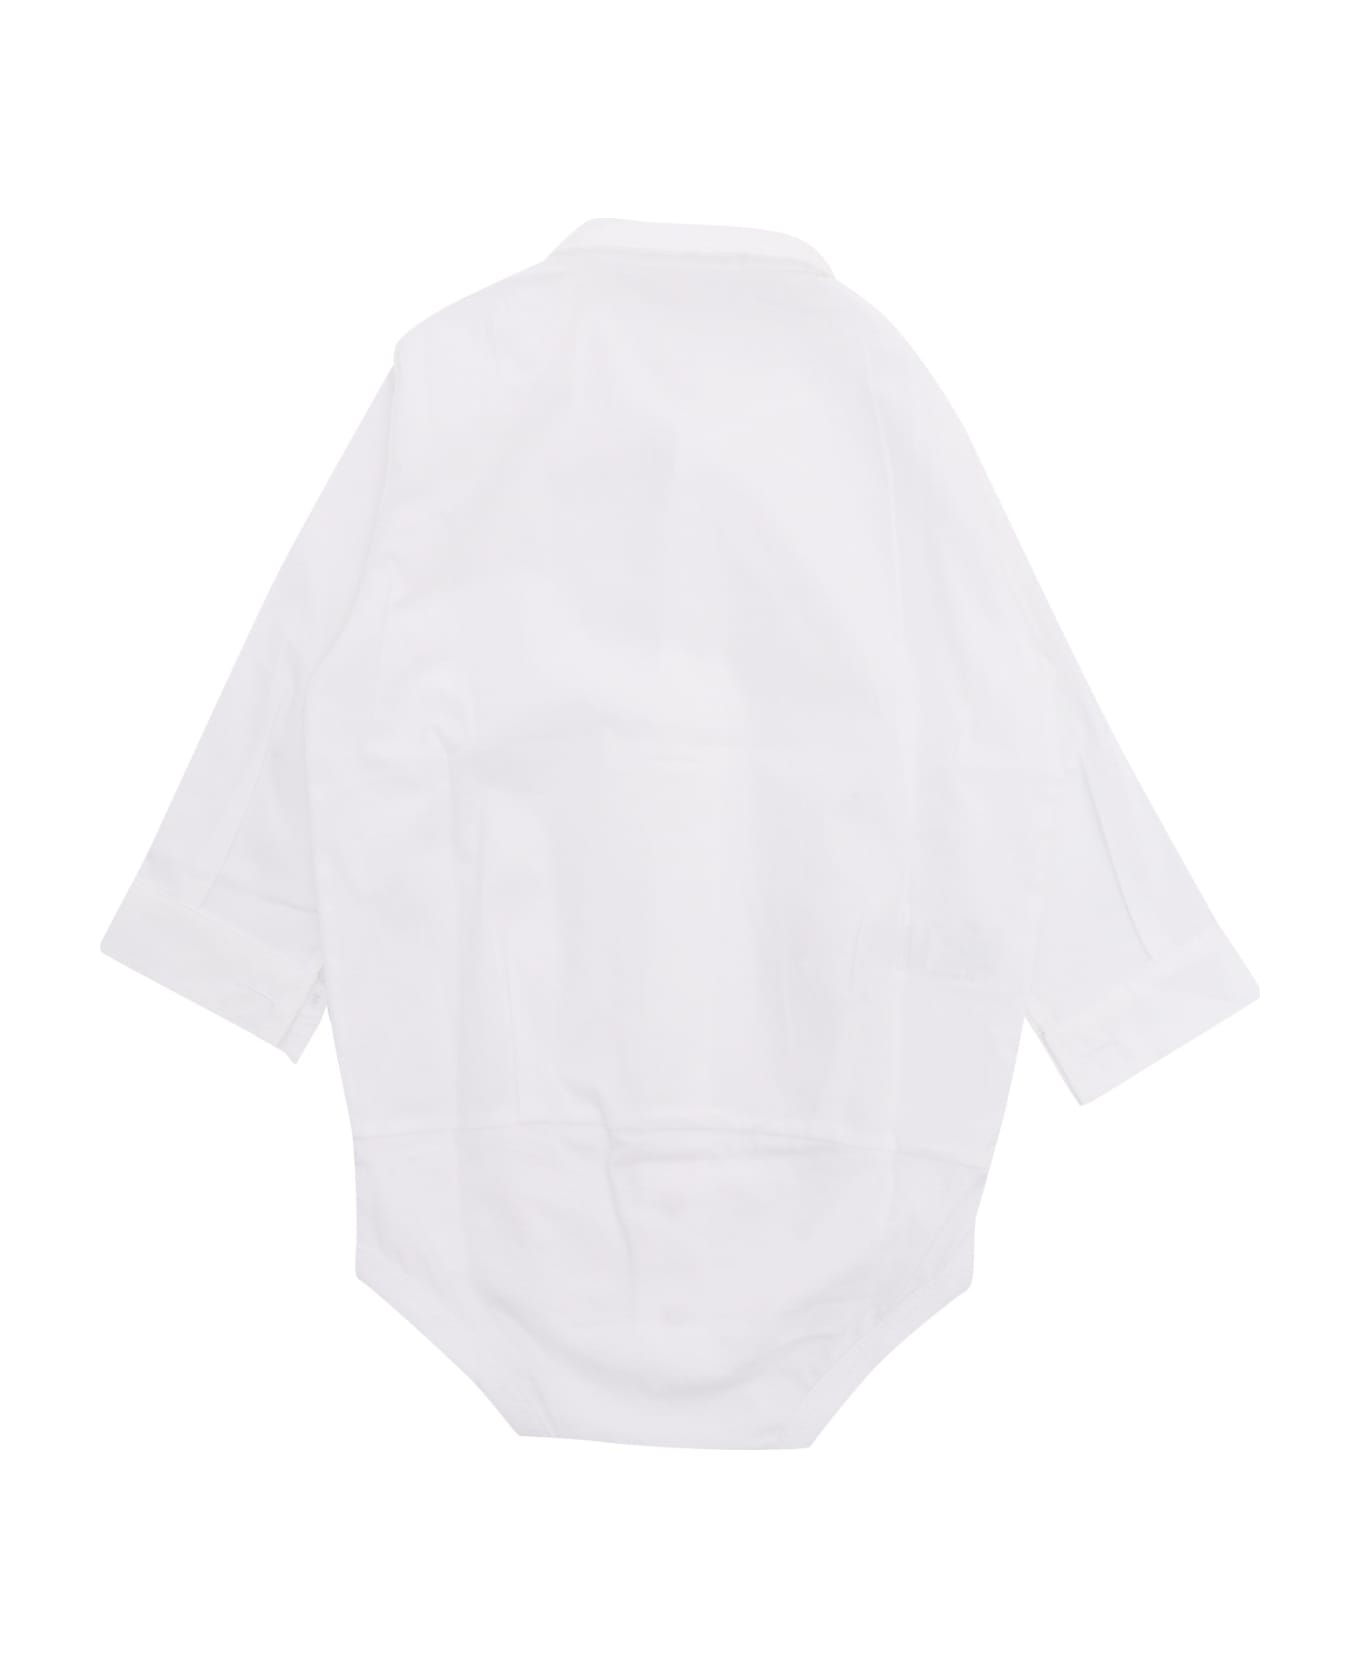 Il Gufo White Chemisier Bodysuit - WHITE